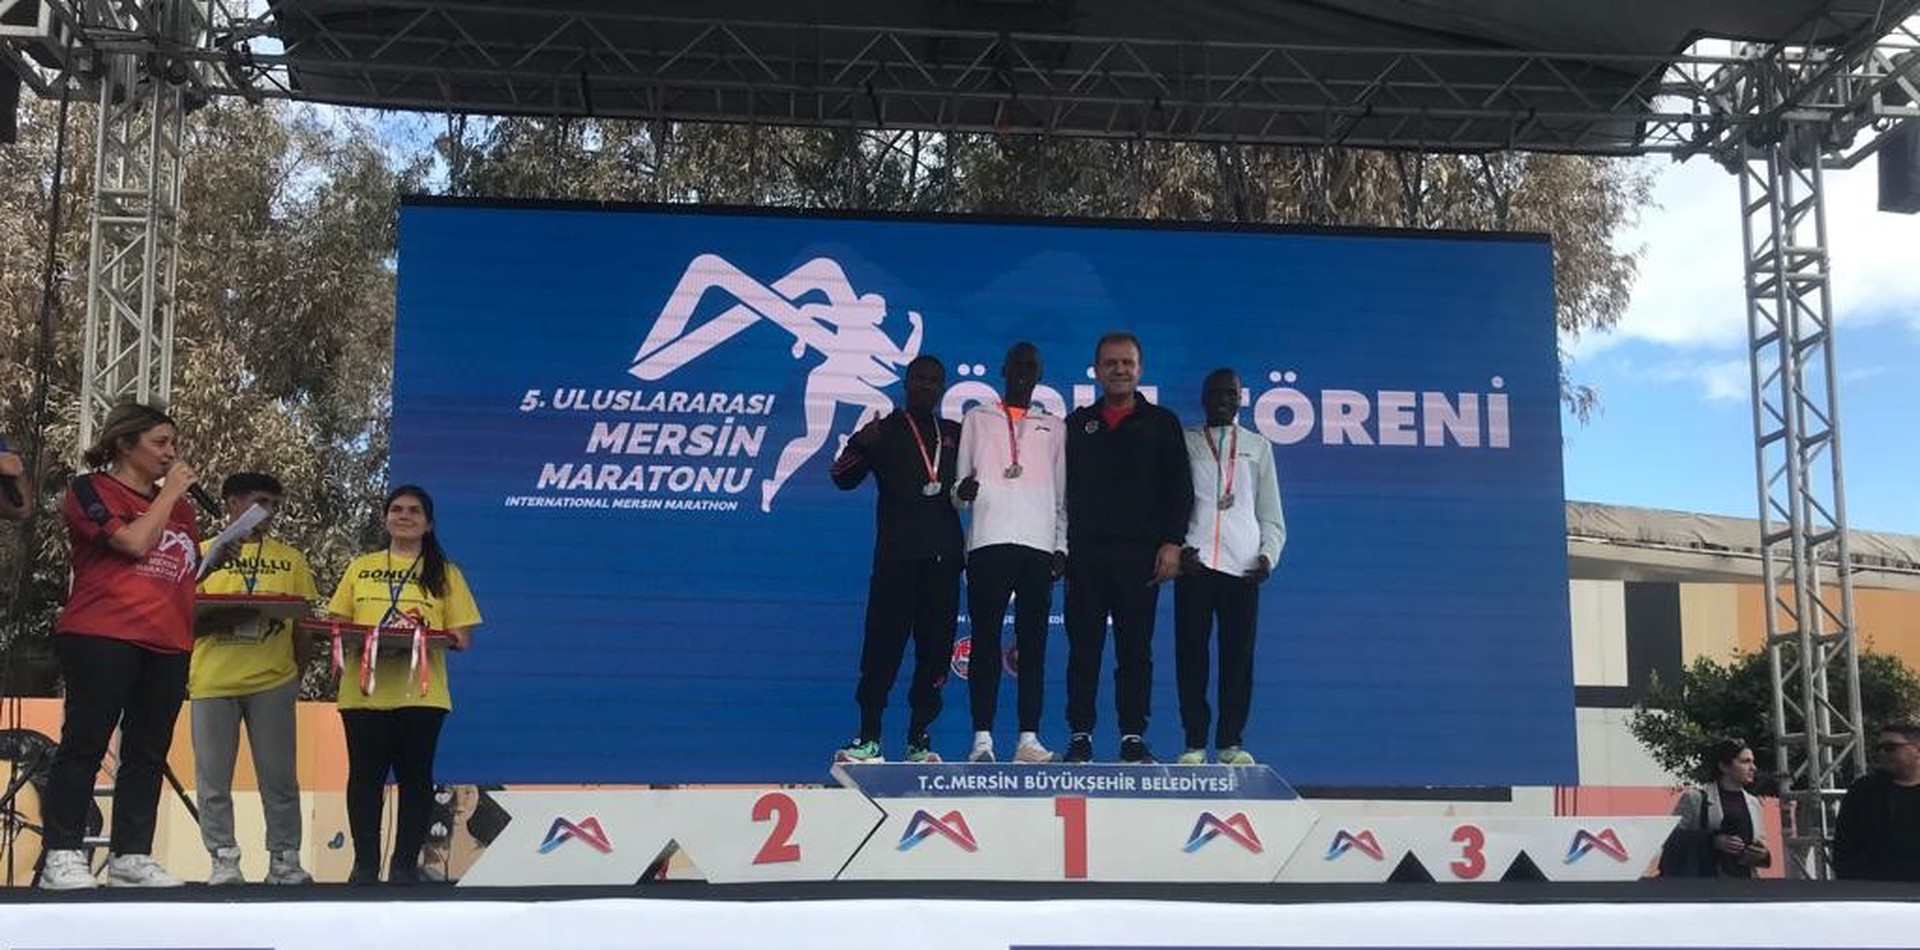 Mersin Maratonu'nu Kenyalı atlet Benard Kipkorir Kazandı